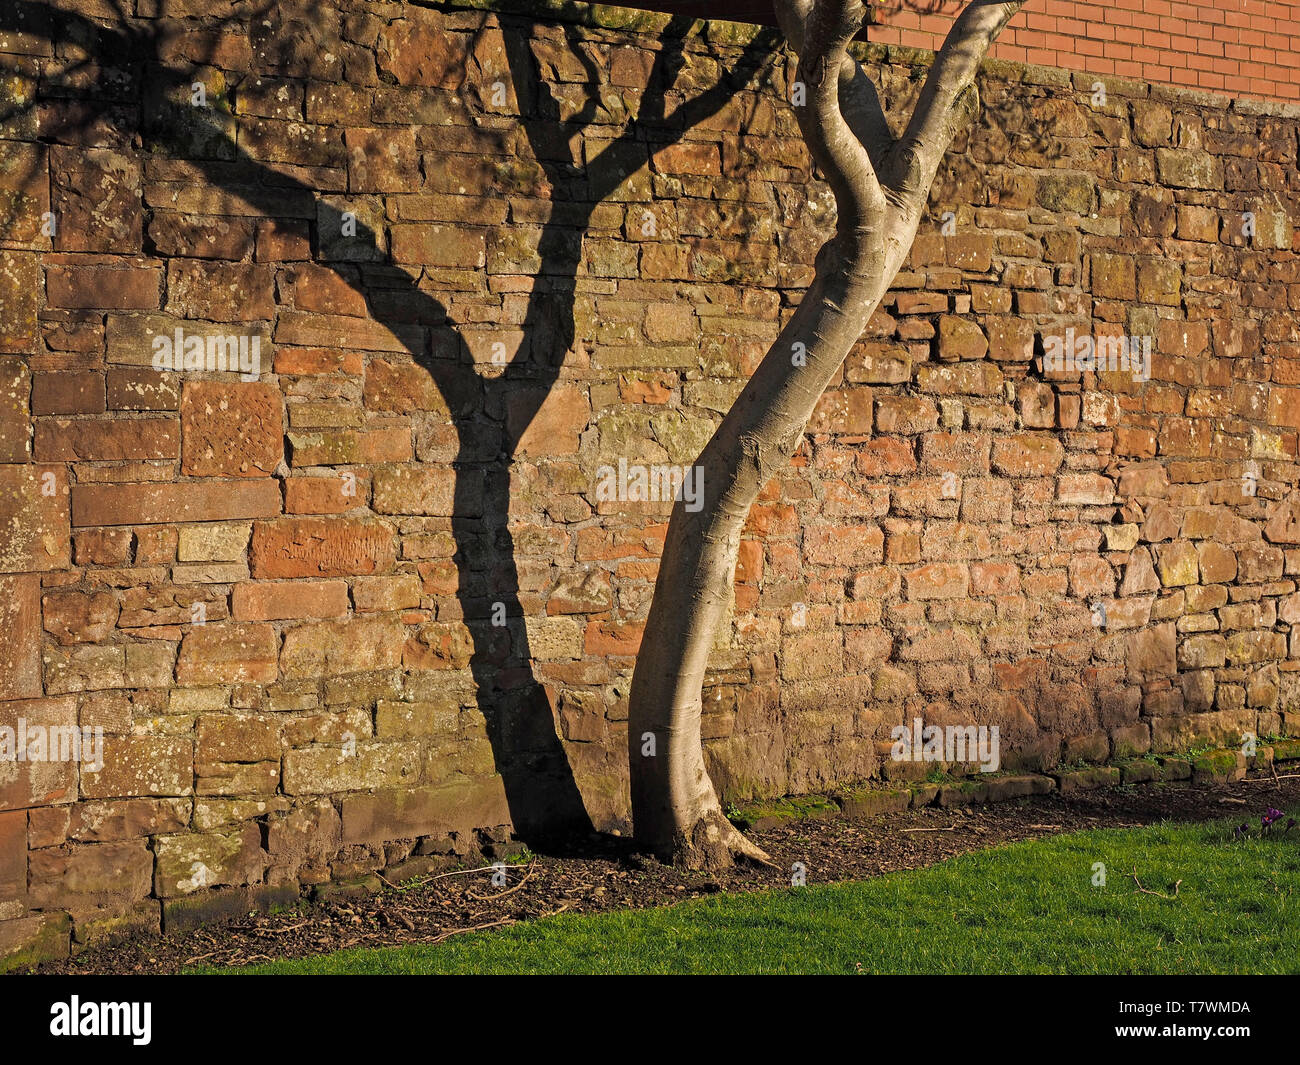 Les patrons de contraste avec un seul arbre tronc courbe sinueuse graphique audacieux casting shadow sur mur en pierre ancienne à Carlisle, Cumbria, Angleterre, Royaume-Uni Banque D'Images